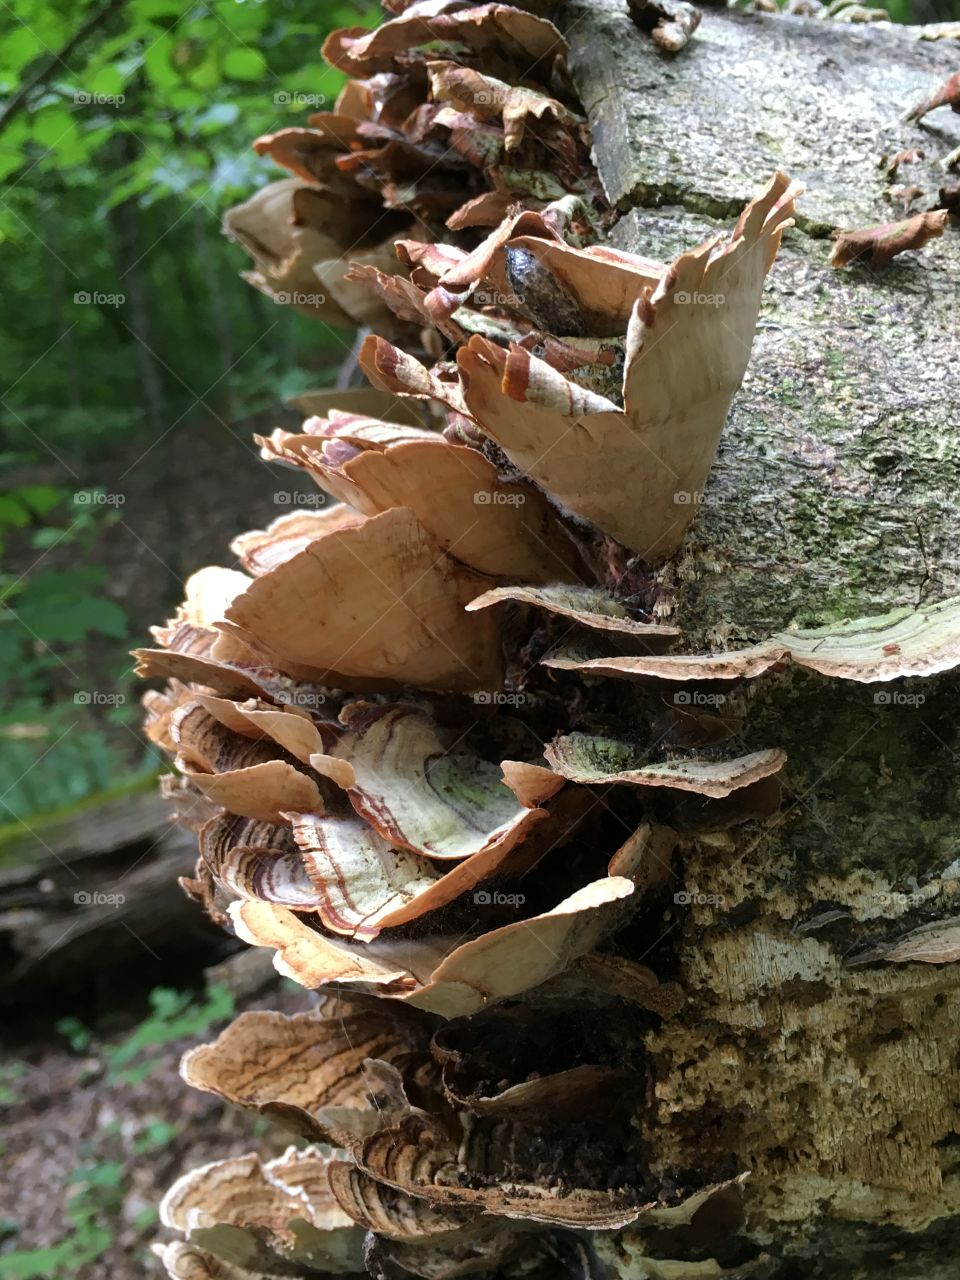 Fungus and slug on a log.